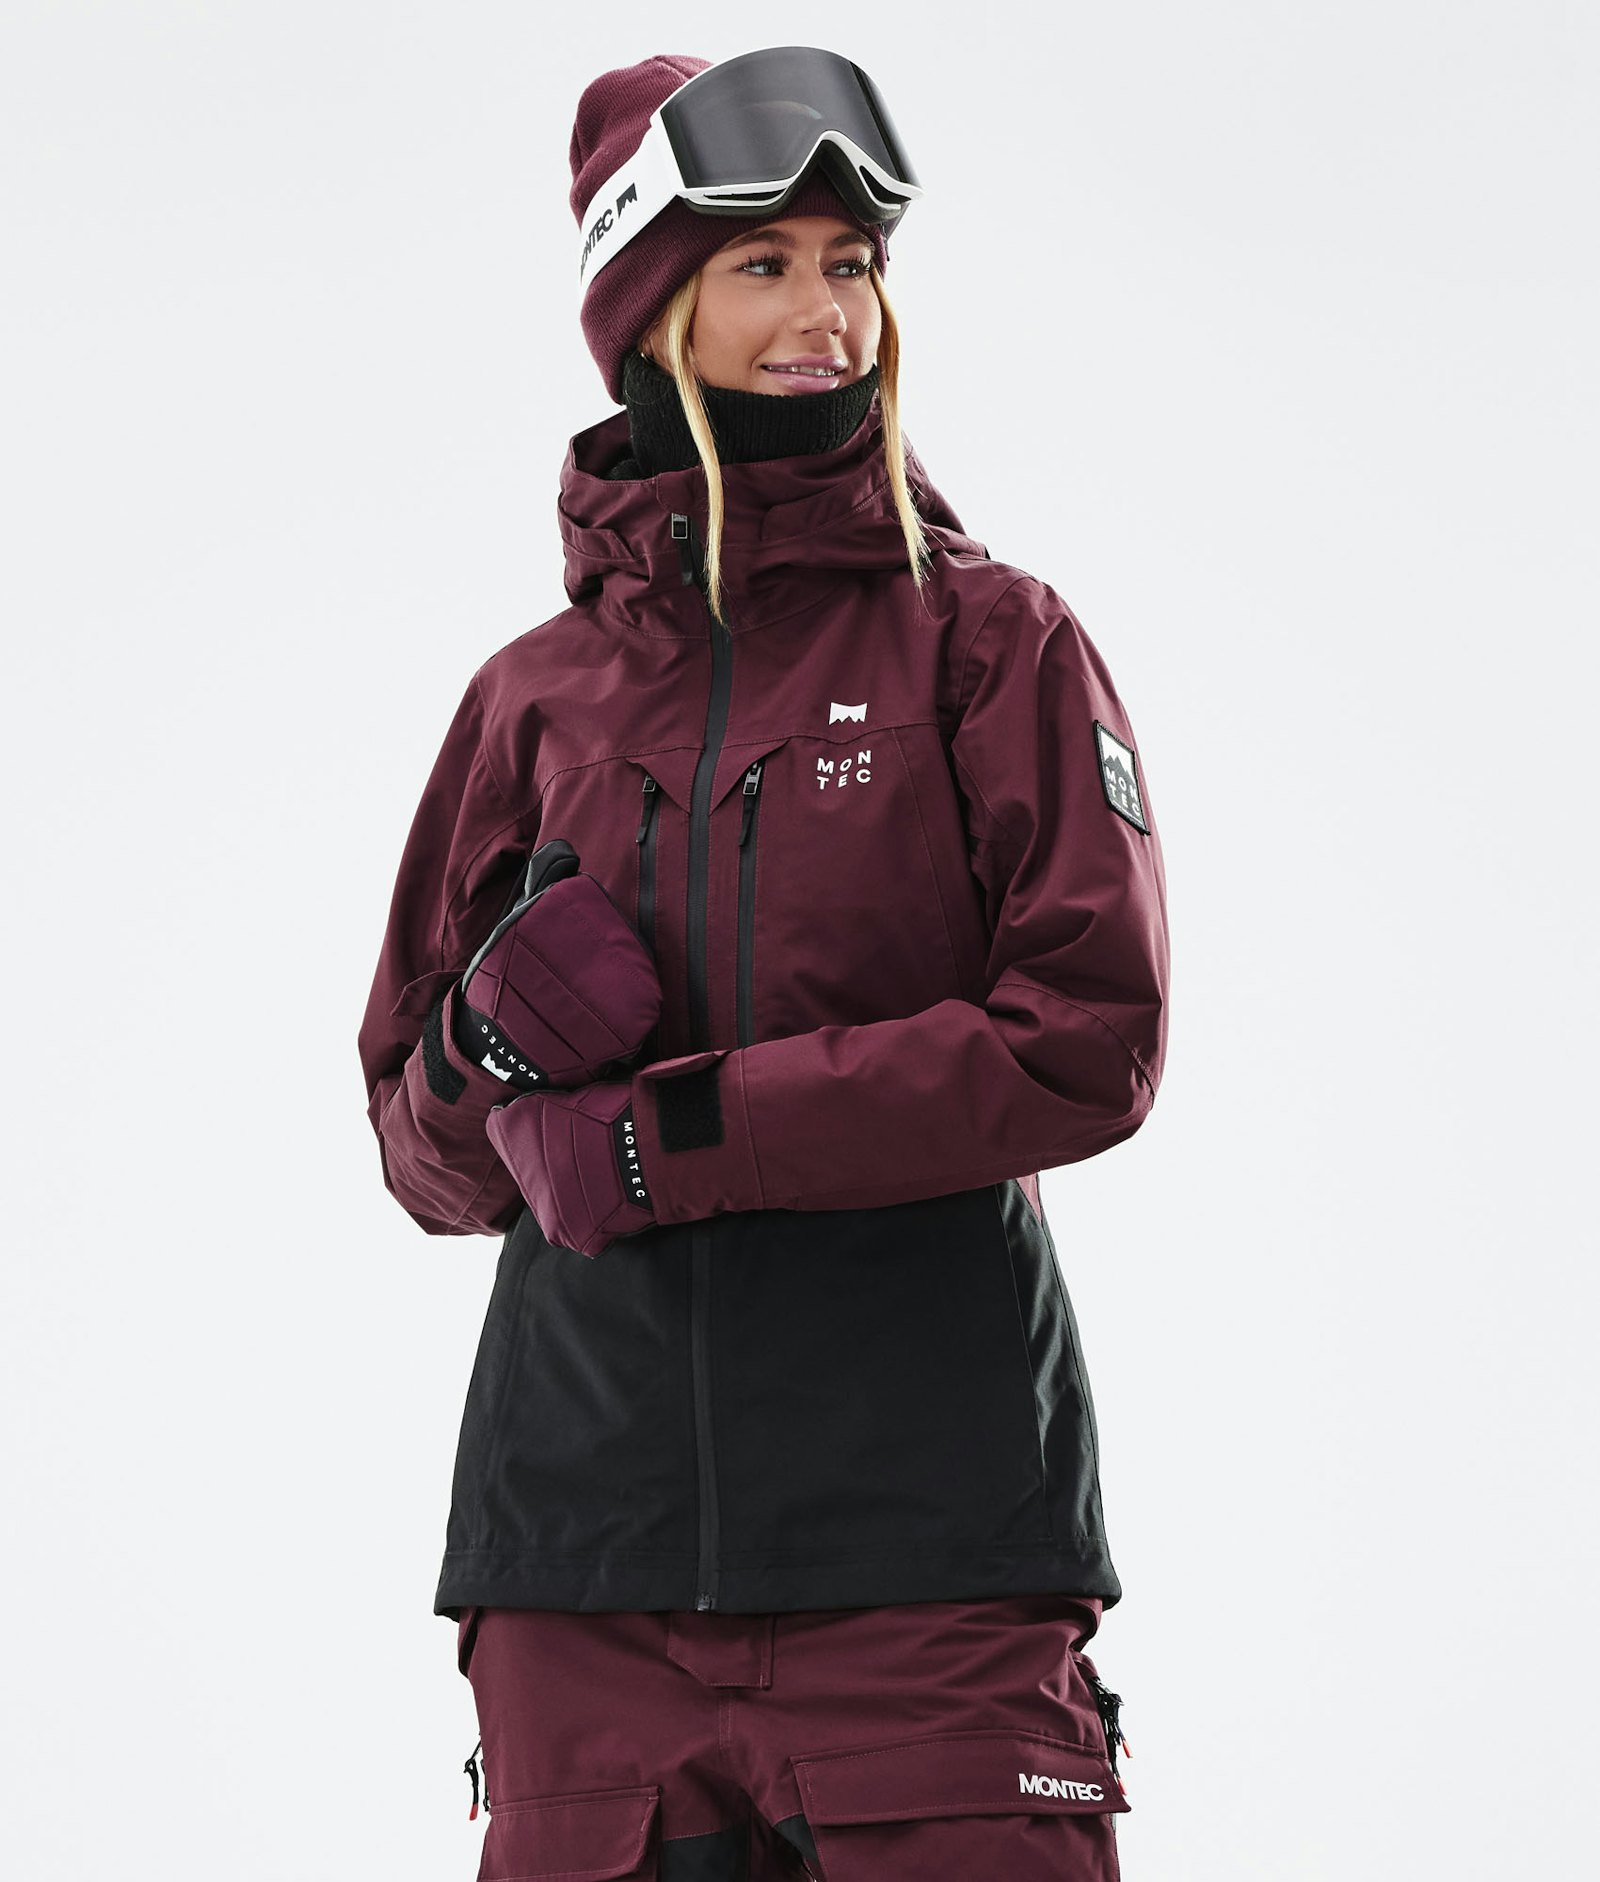 Moss W 2021 Manteau Ski Femme Burgundy/Black